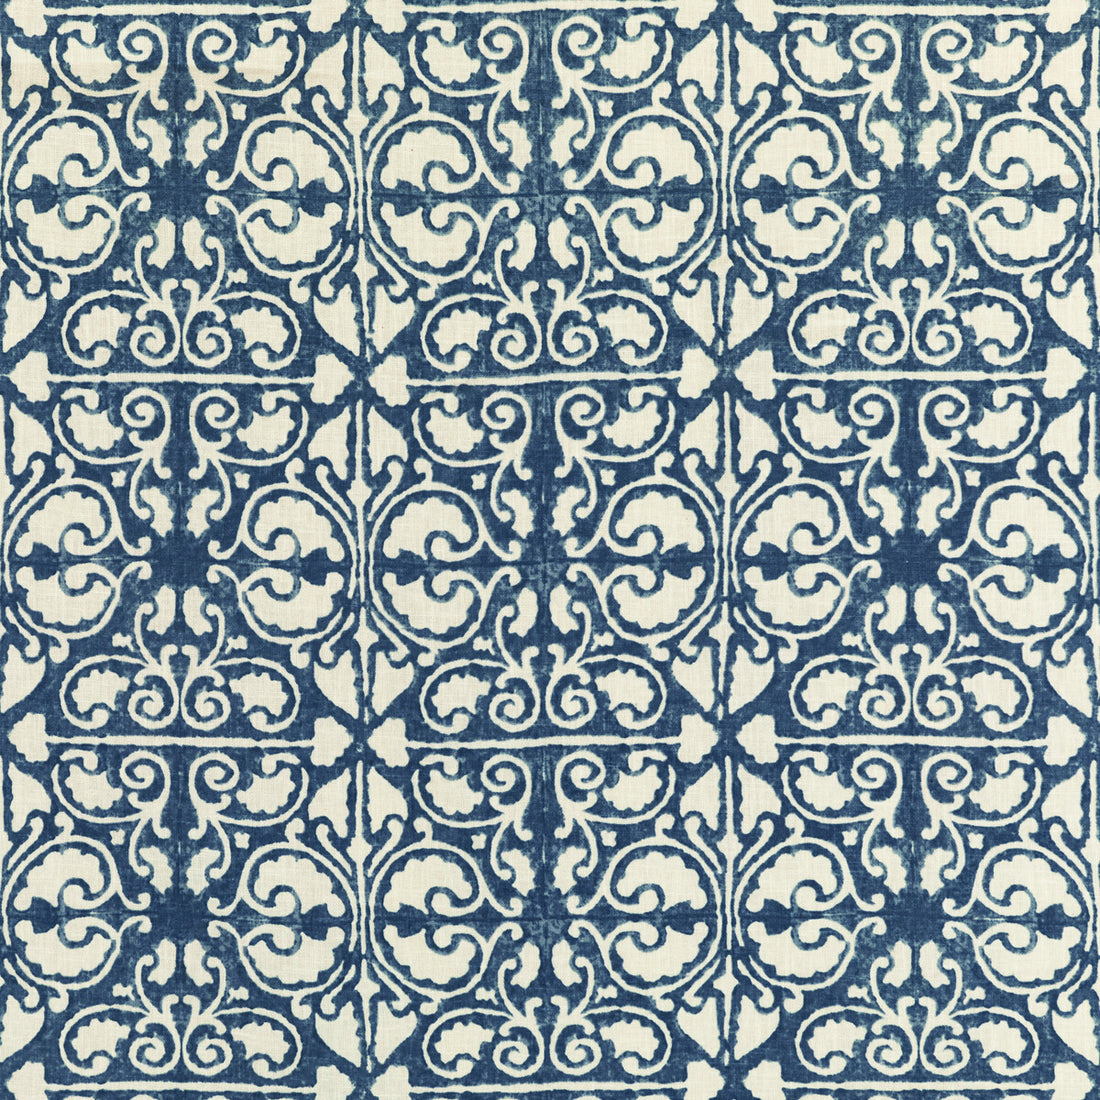 Kravet Basics fabric in agra tile-50 color - pattern AGRA TILE.50.0 - by Kravet Basics in the L&